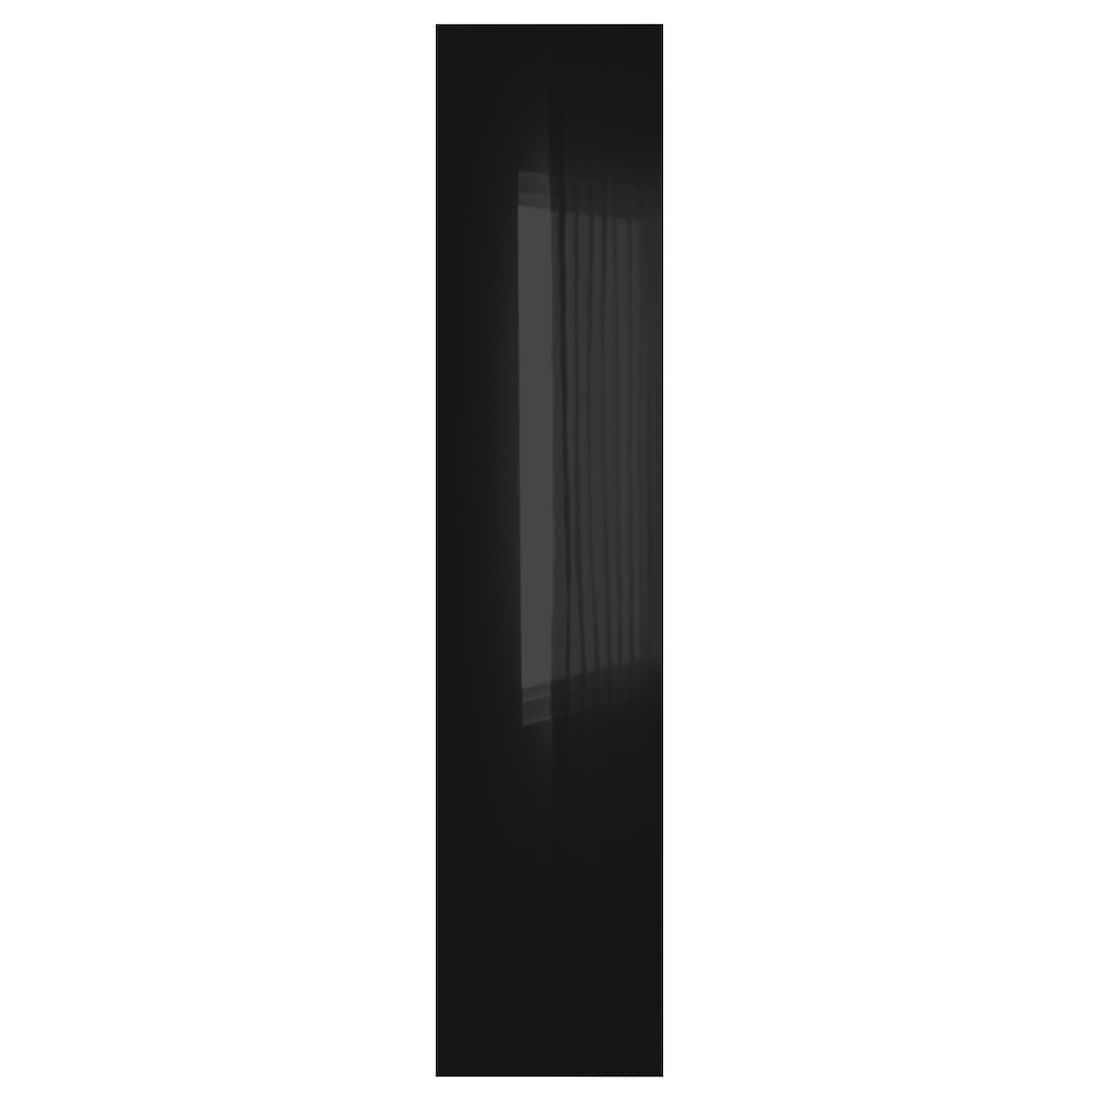 IKEA FARDAL ФАРДАЛЬ Дверь, глянцевый черный, 50x229 см 30485802 | 304.858.02